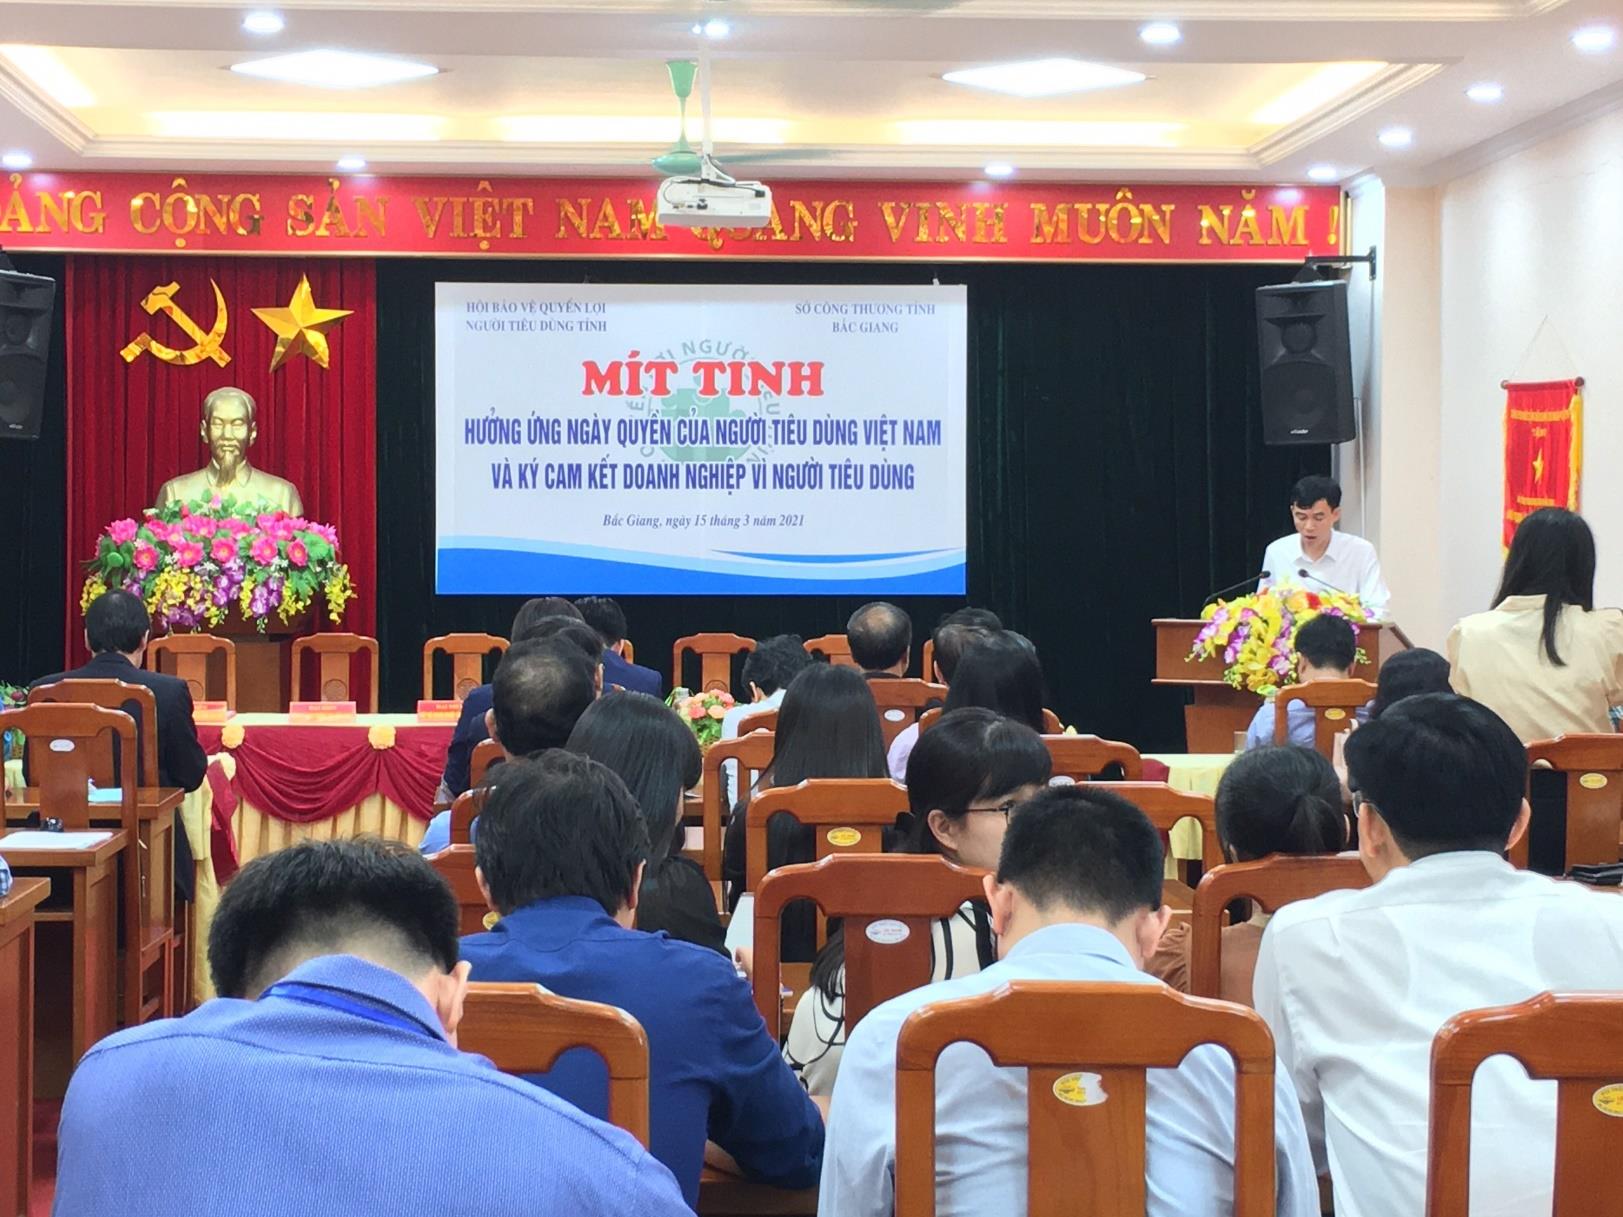 Hình ảnh: Các hoạt động hưởng ứng Ngày Quyền của người tiêu dùng Việt Nam năm 2021 tại Bắc Giang